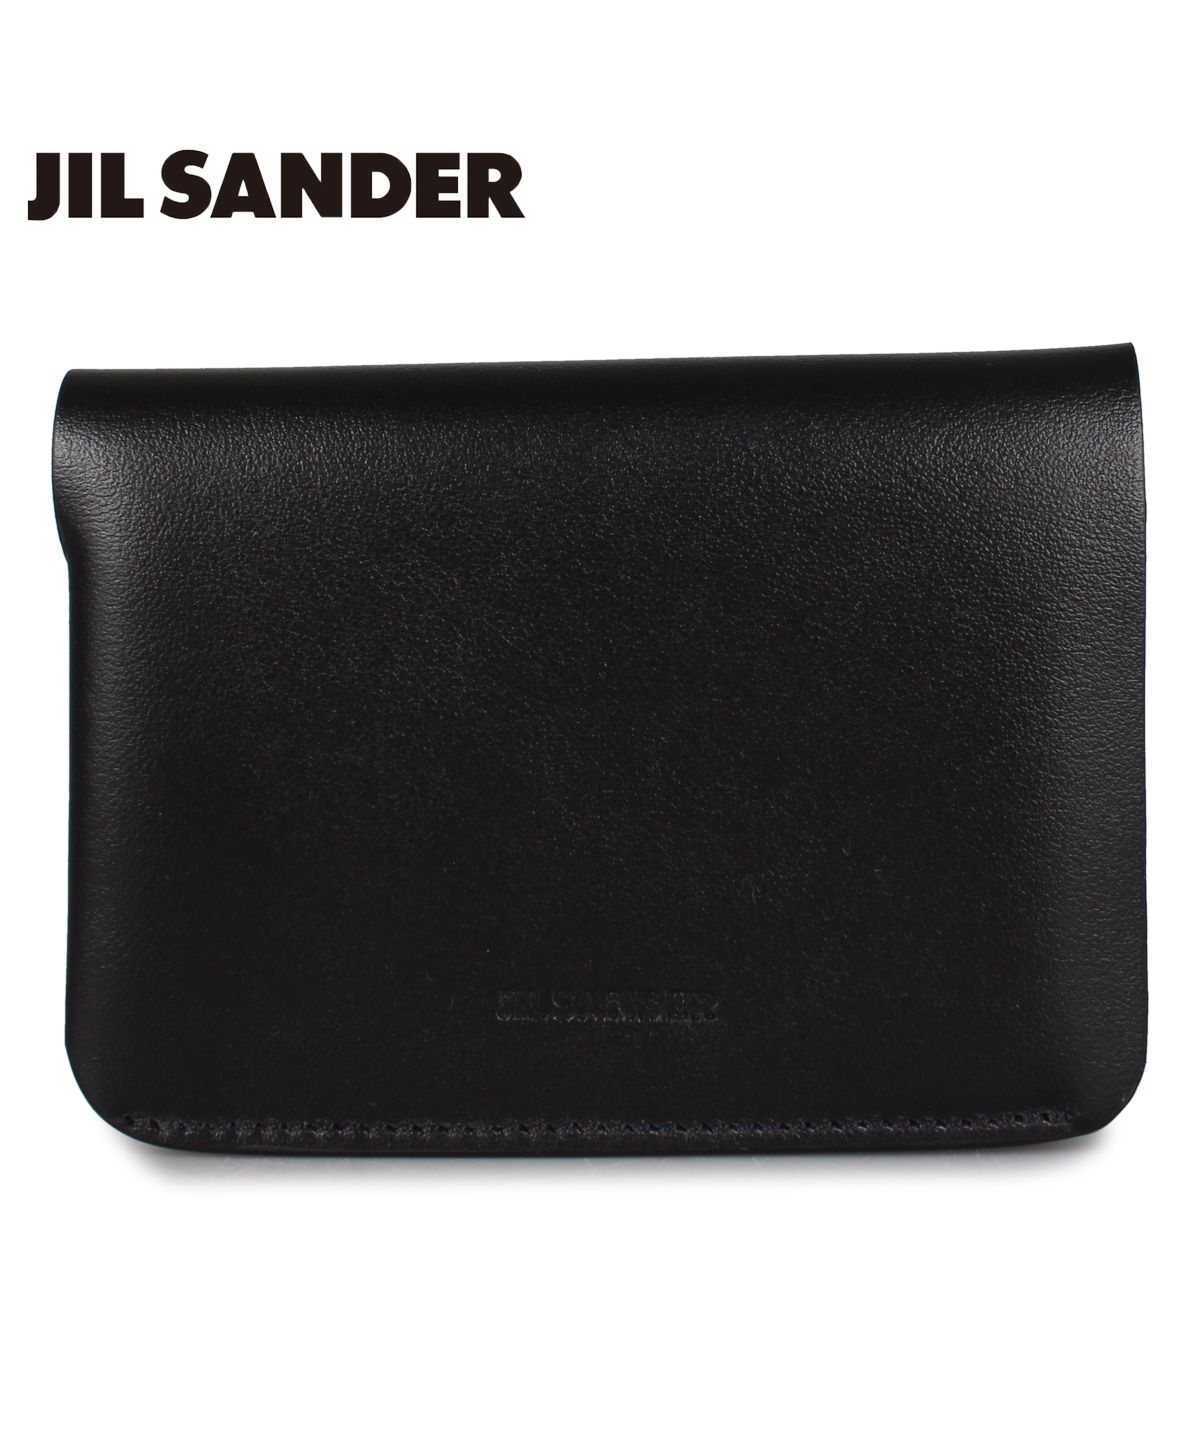 ジルサンダー JIL SANDER ミニ財布 カードケース メンズ レディース スリム 薄型 DOUBLE CARD WALLET ブラック 黒  JSMS840